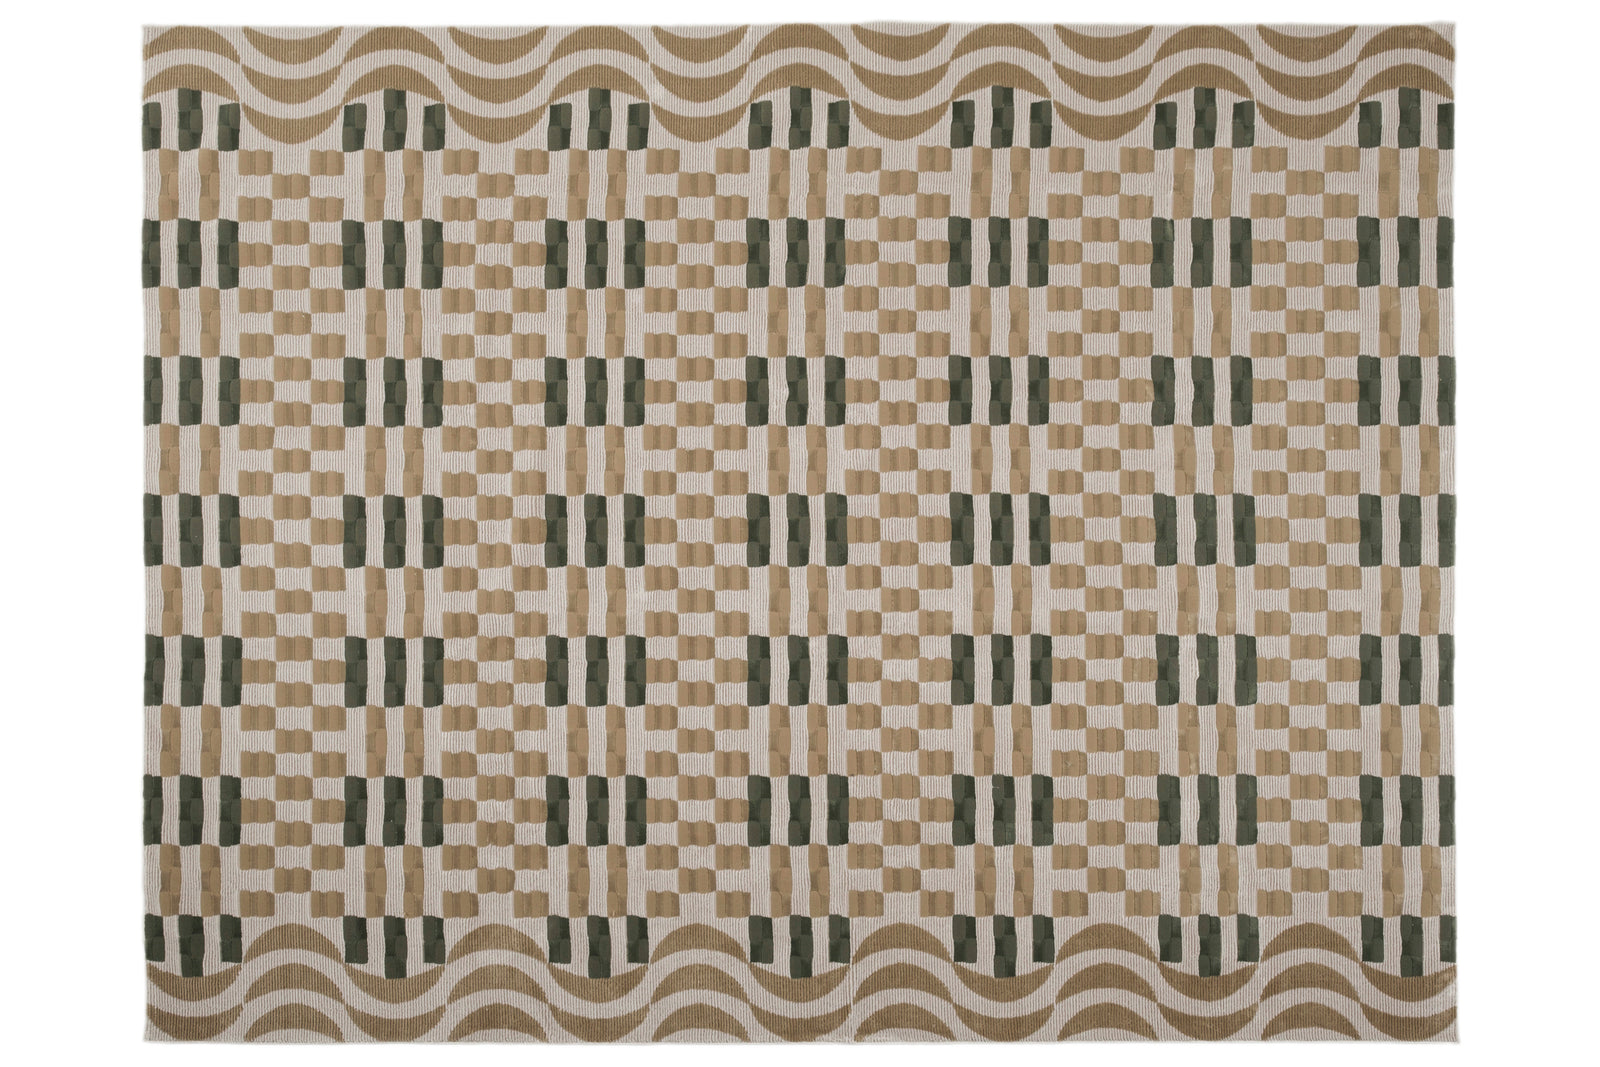 Louis Vuitton Monogram Throw Blanket - Brown Throws, Pillows